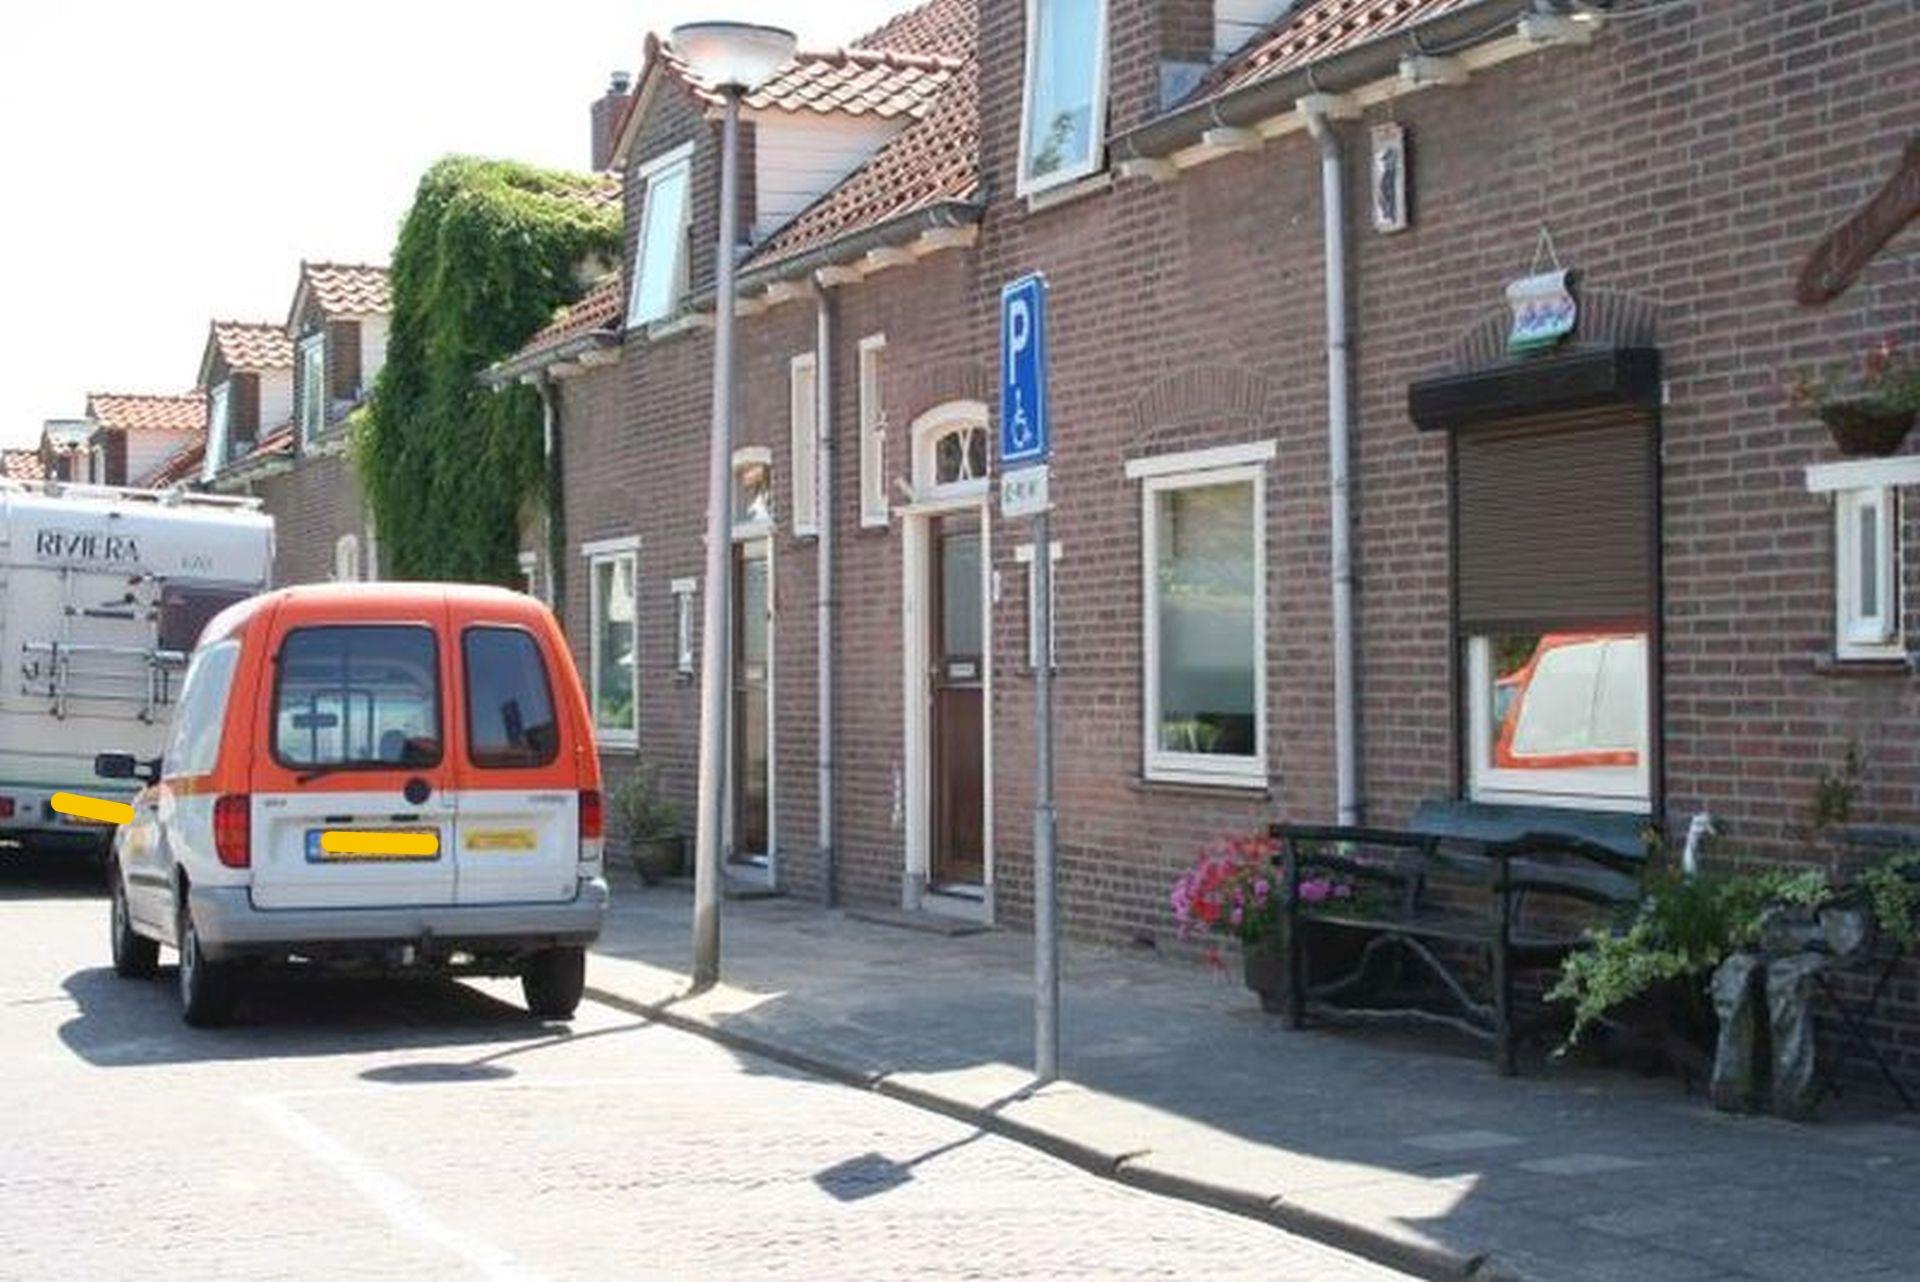 Wilhelminastraat 24, 3181 VN Rozenburg, Nederland